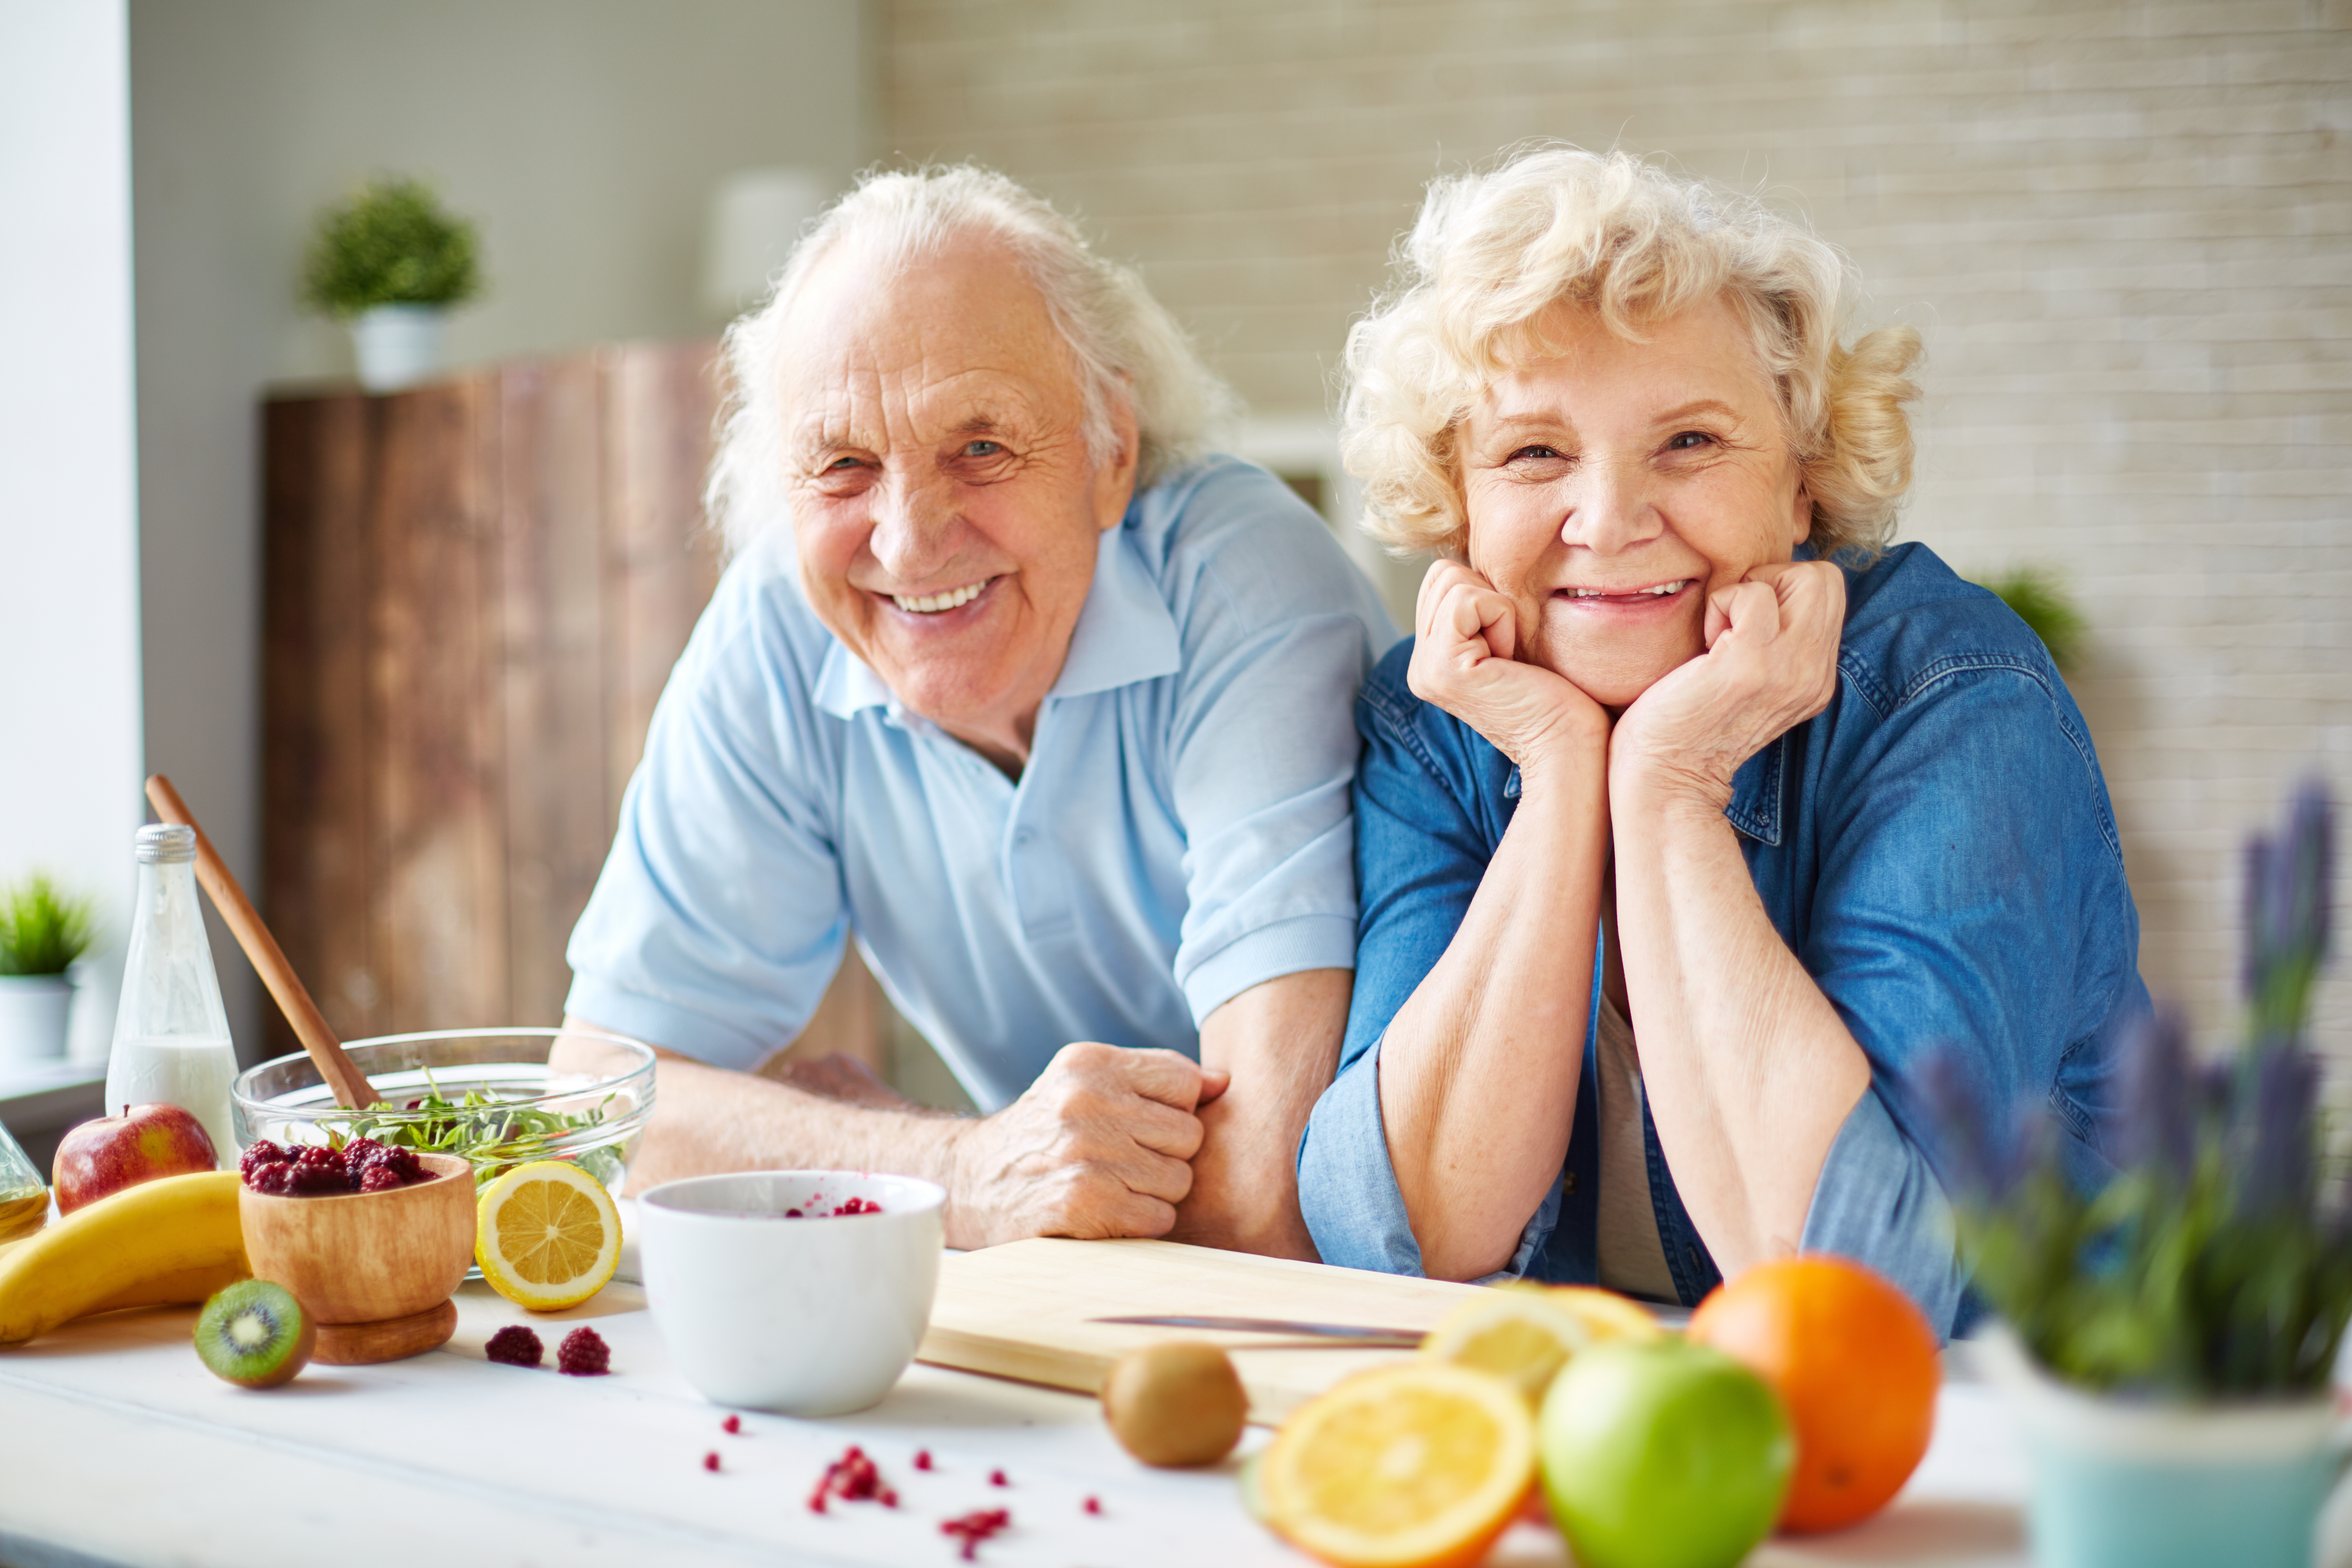 táplálkozás magas vérnyomásban szenvedő idősek számára)